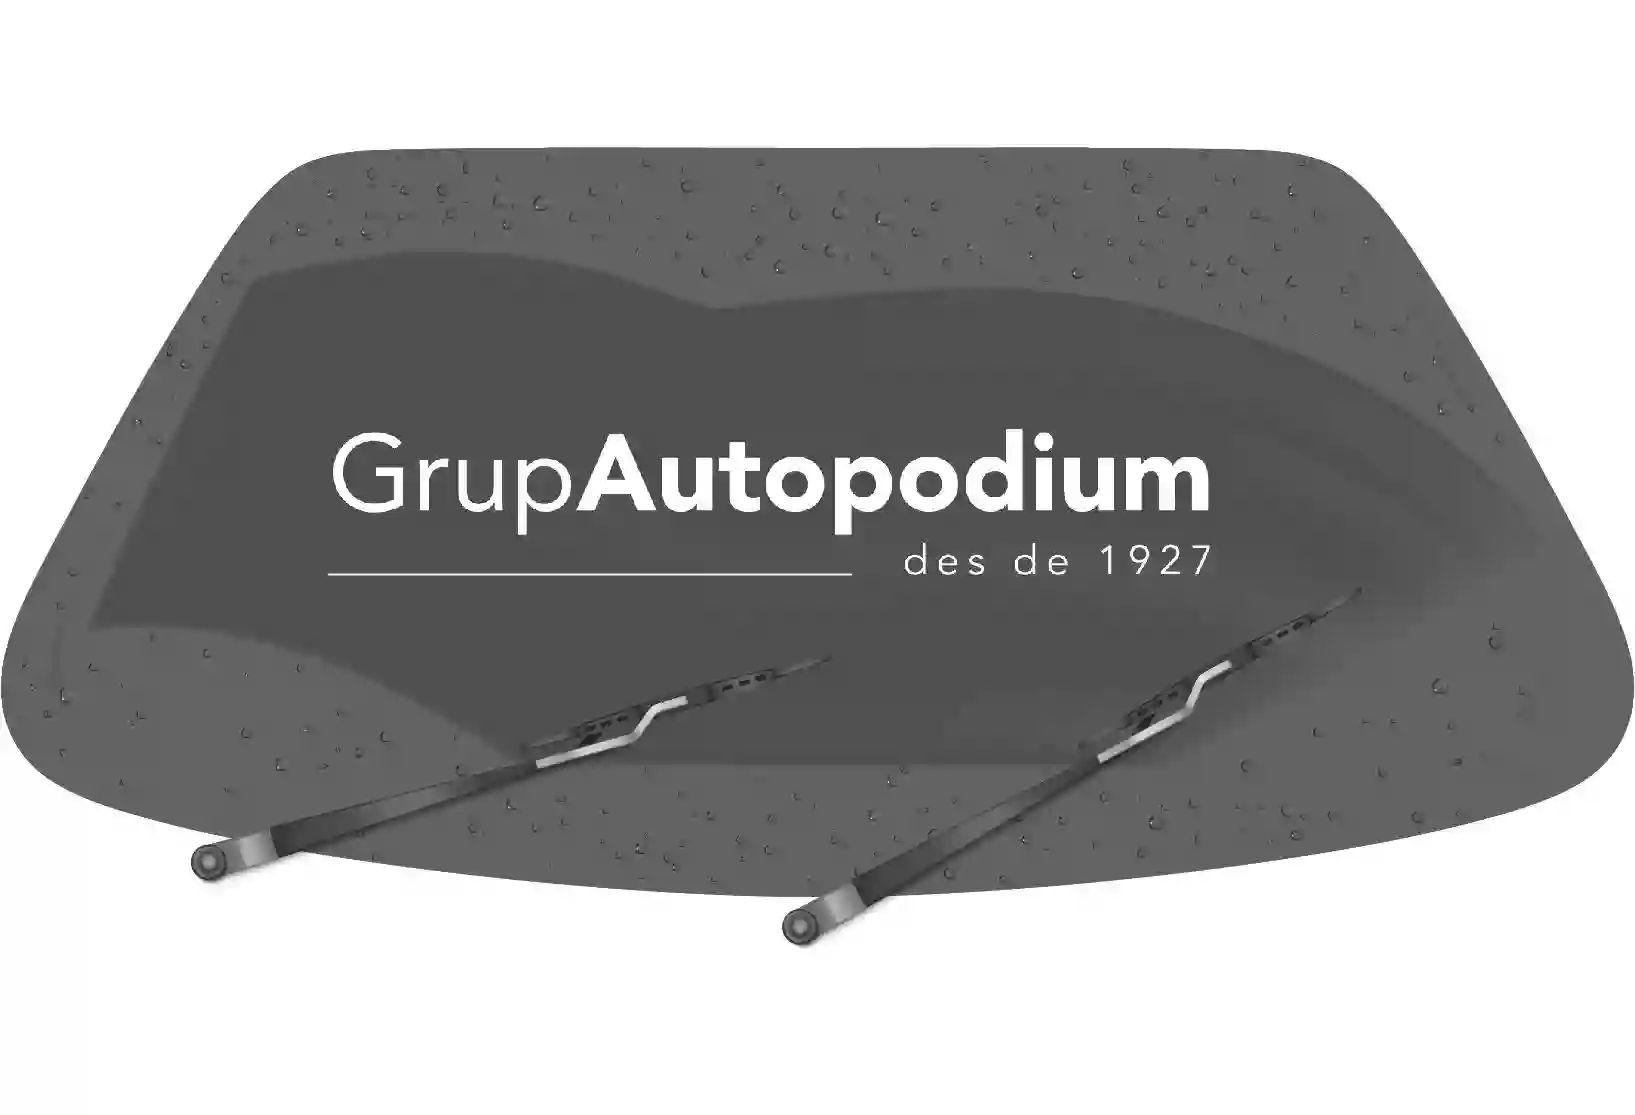 Autopodium Figueres - Servei Oficial Volkswagen